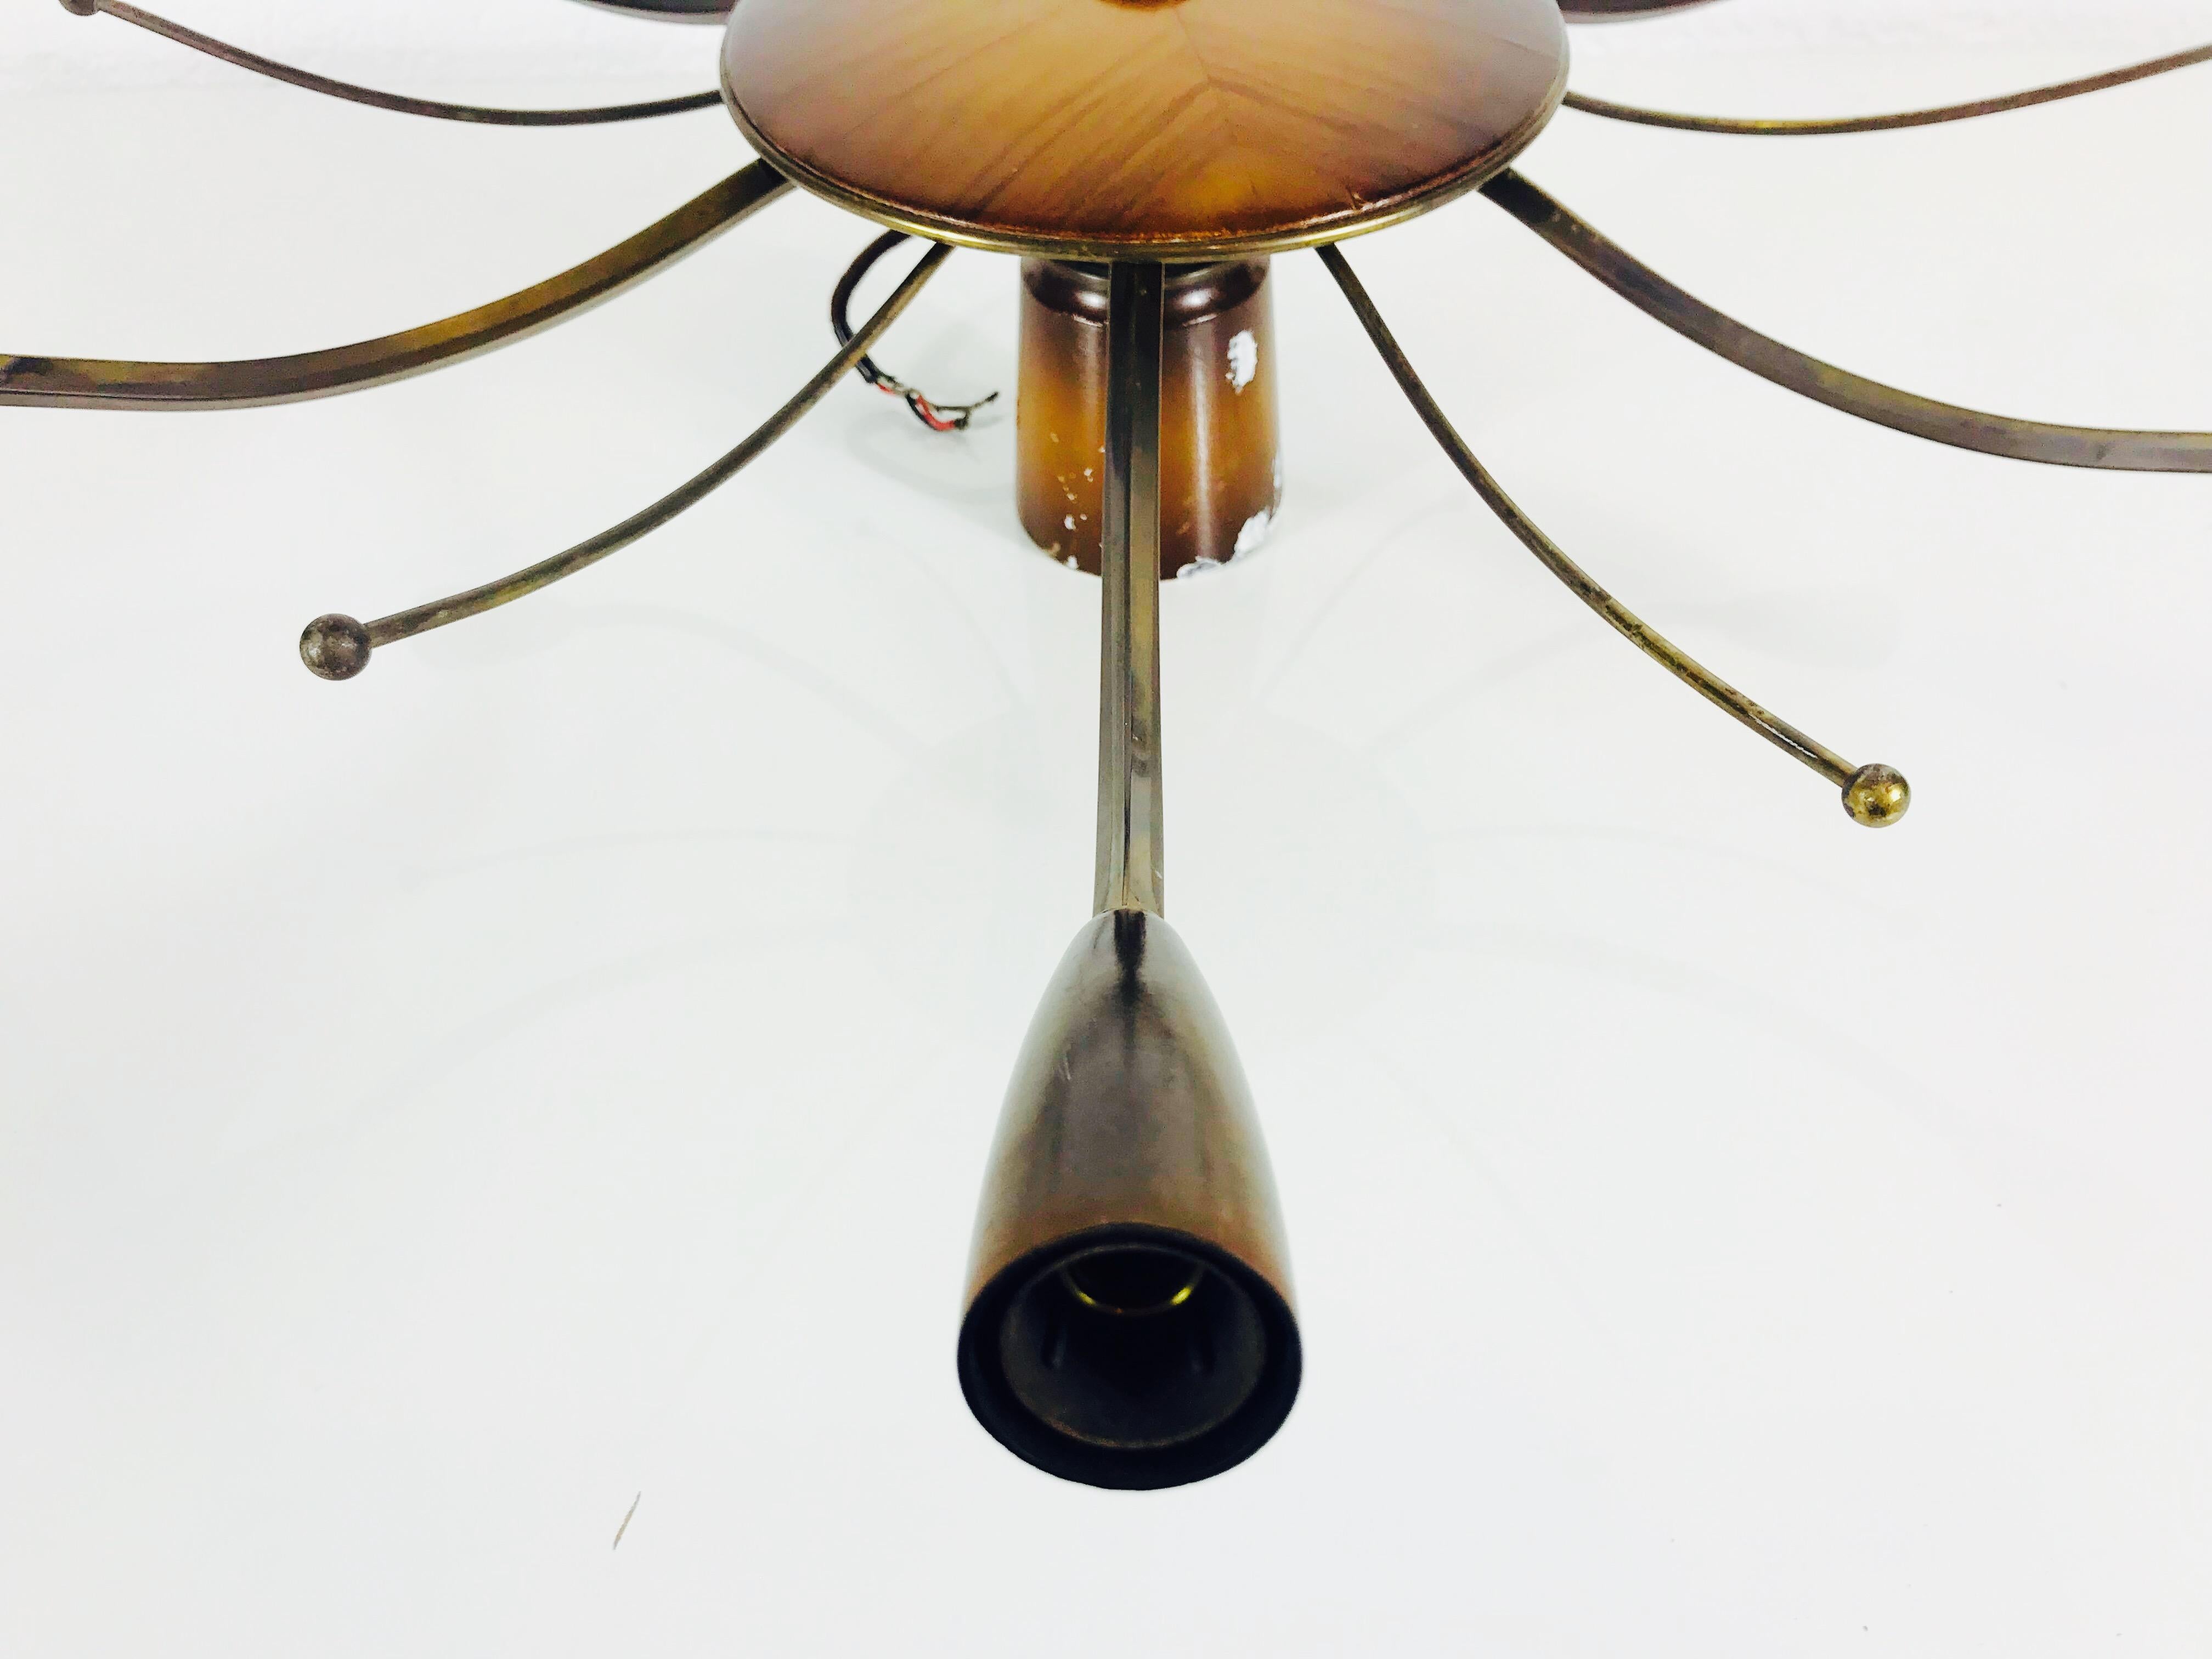 Un lustre spoutnik fabriqué en Allemagne dans les années 1950. Il est fascinant avec ses six bras en laiton, chacun d'entre eux portant une ampoule E14. Plus six autres bras en laiton sans ampoule. Le design et la forme de la lampe ressemblent à une